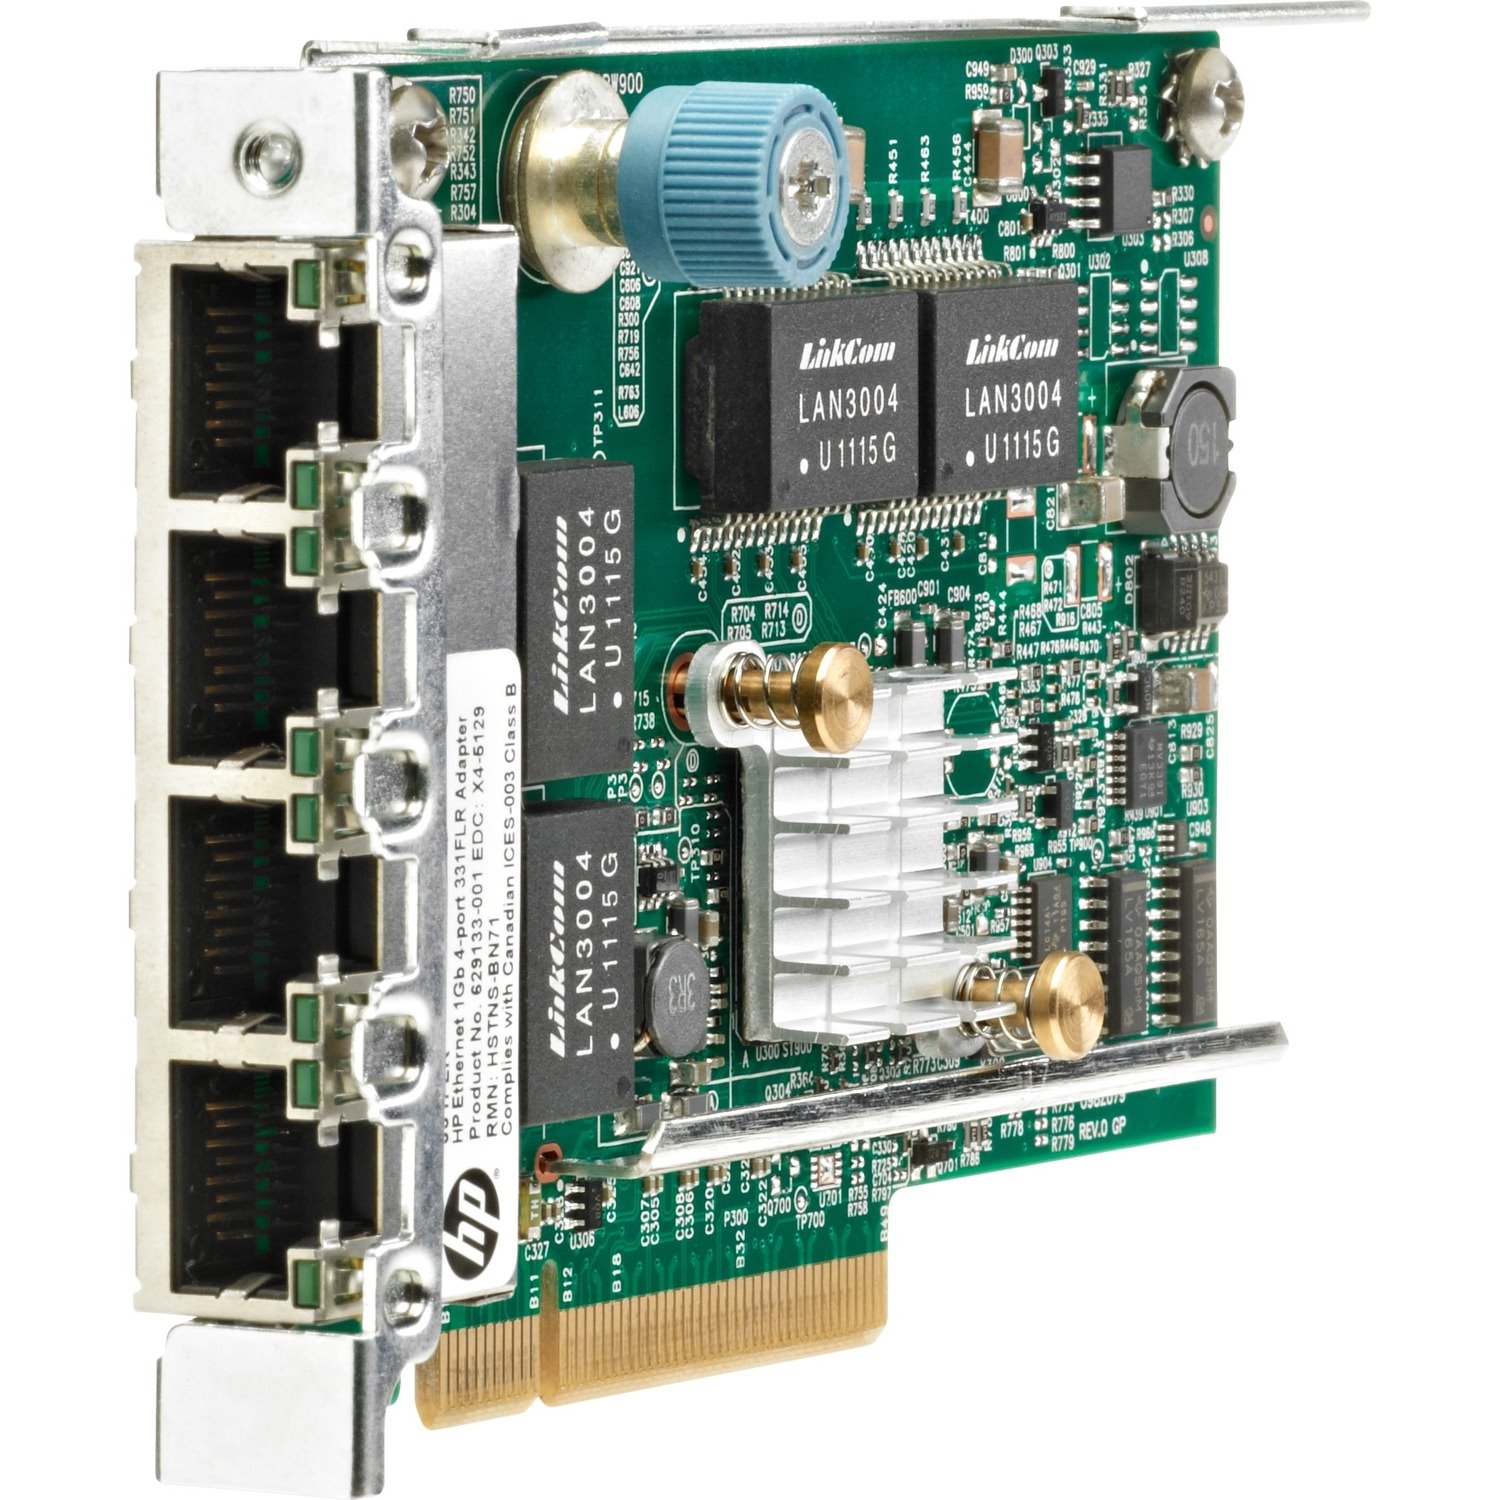 HPE Ethernet 1Gb 4-port 331FLR Adapter